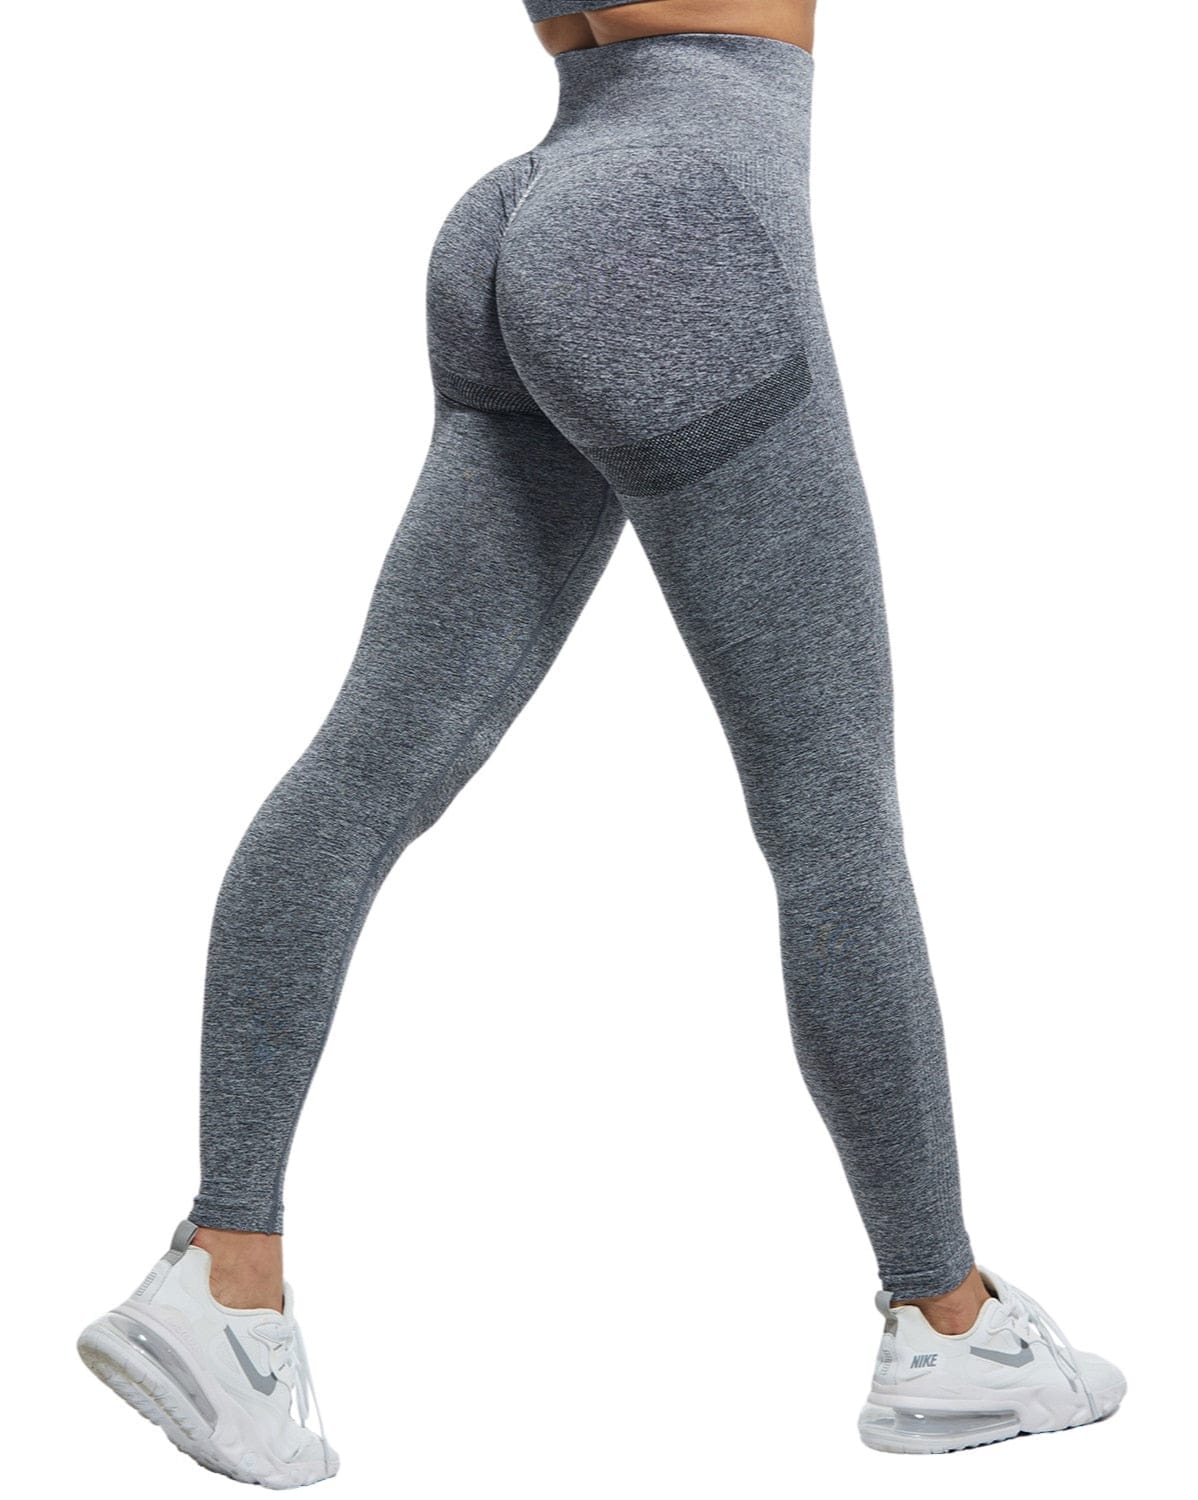 https://bennysbeautyworld.ca/cdn/shop/files/Women-s-High-Waist-Leggings-For-Fitness-Ladies-Sexy-Bubble-Butt-BENNYS-84.jpg?v=1686490039&width=2400